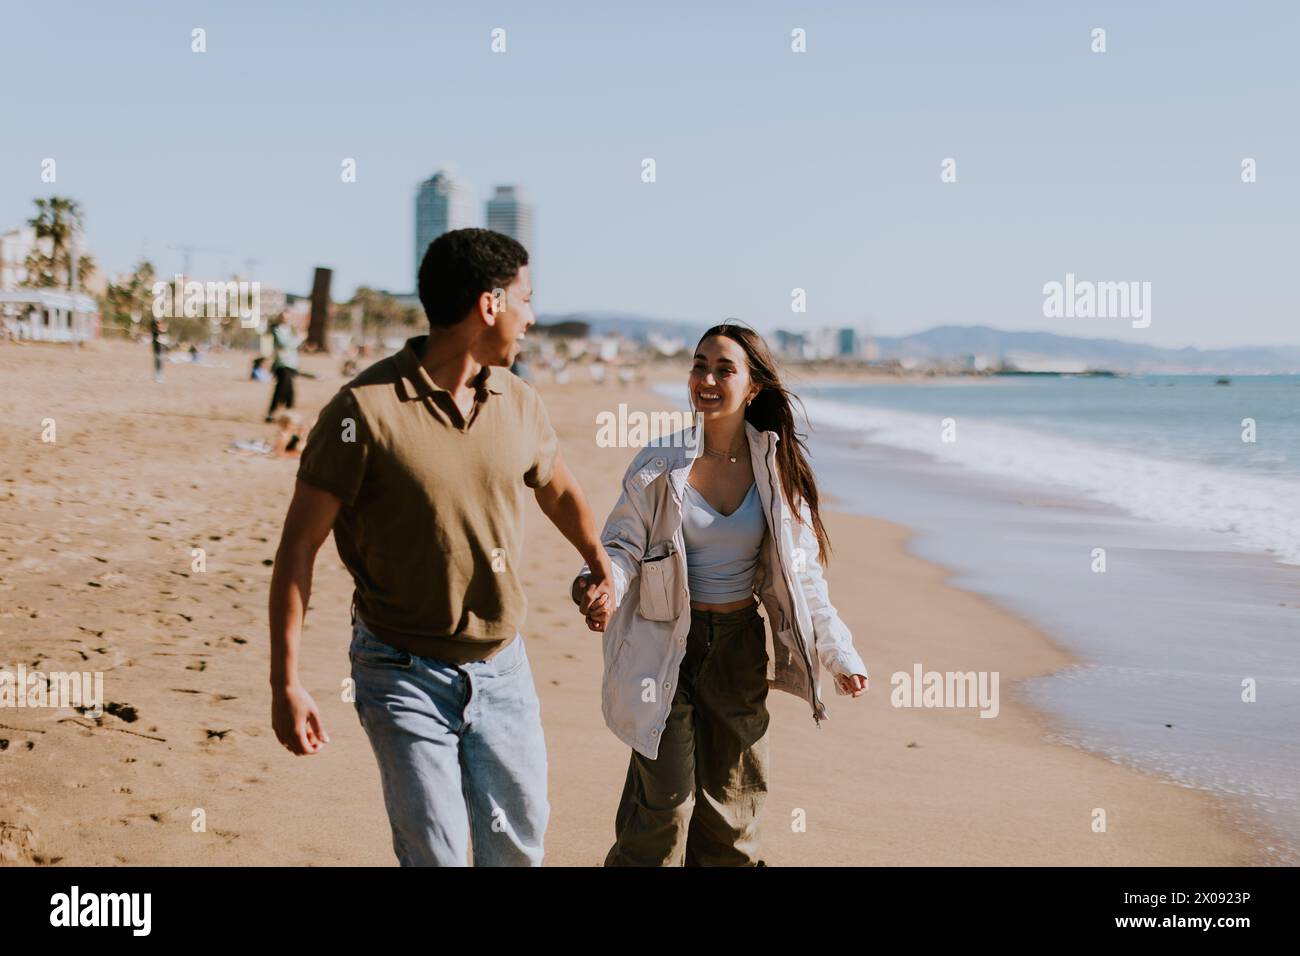 Ein lächelndes Paar genießt einen sorglosen Lauf an einem Sandstrand, Wellen brechen sanft in den Hintergrund Stockfoto